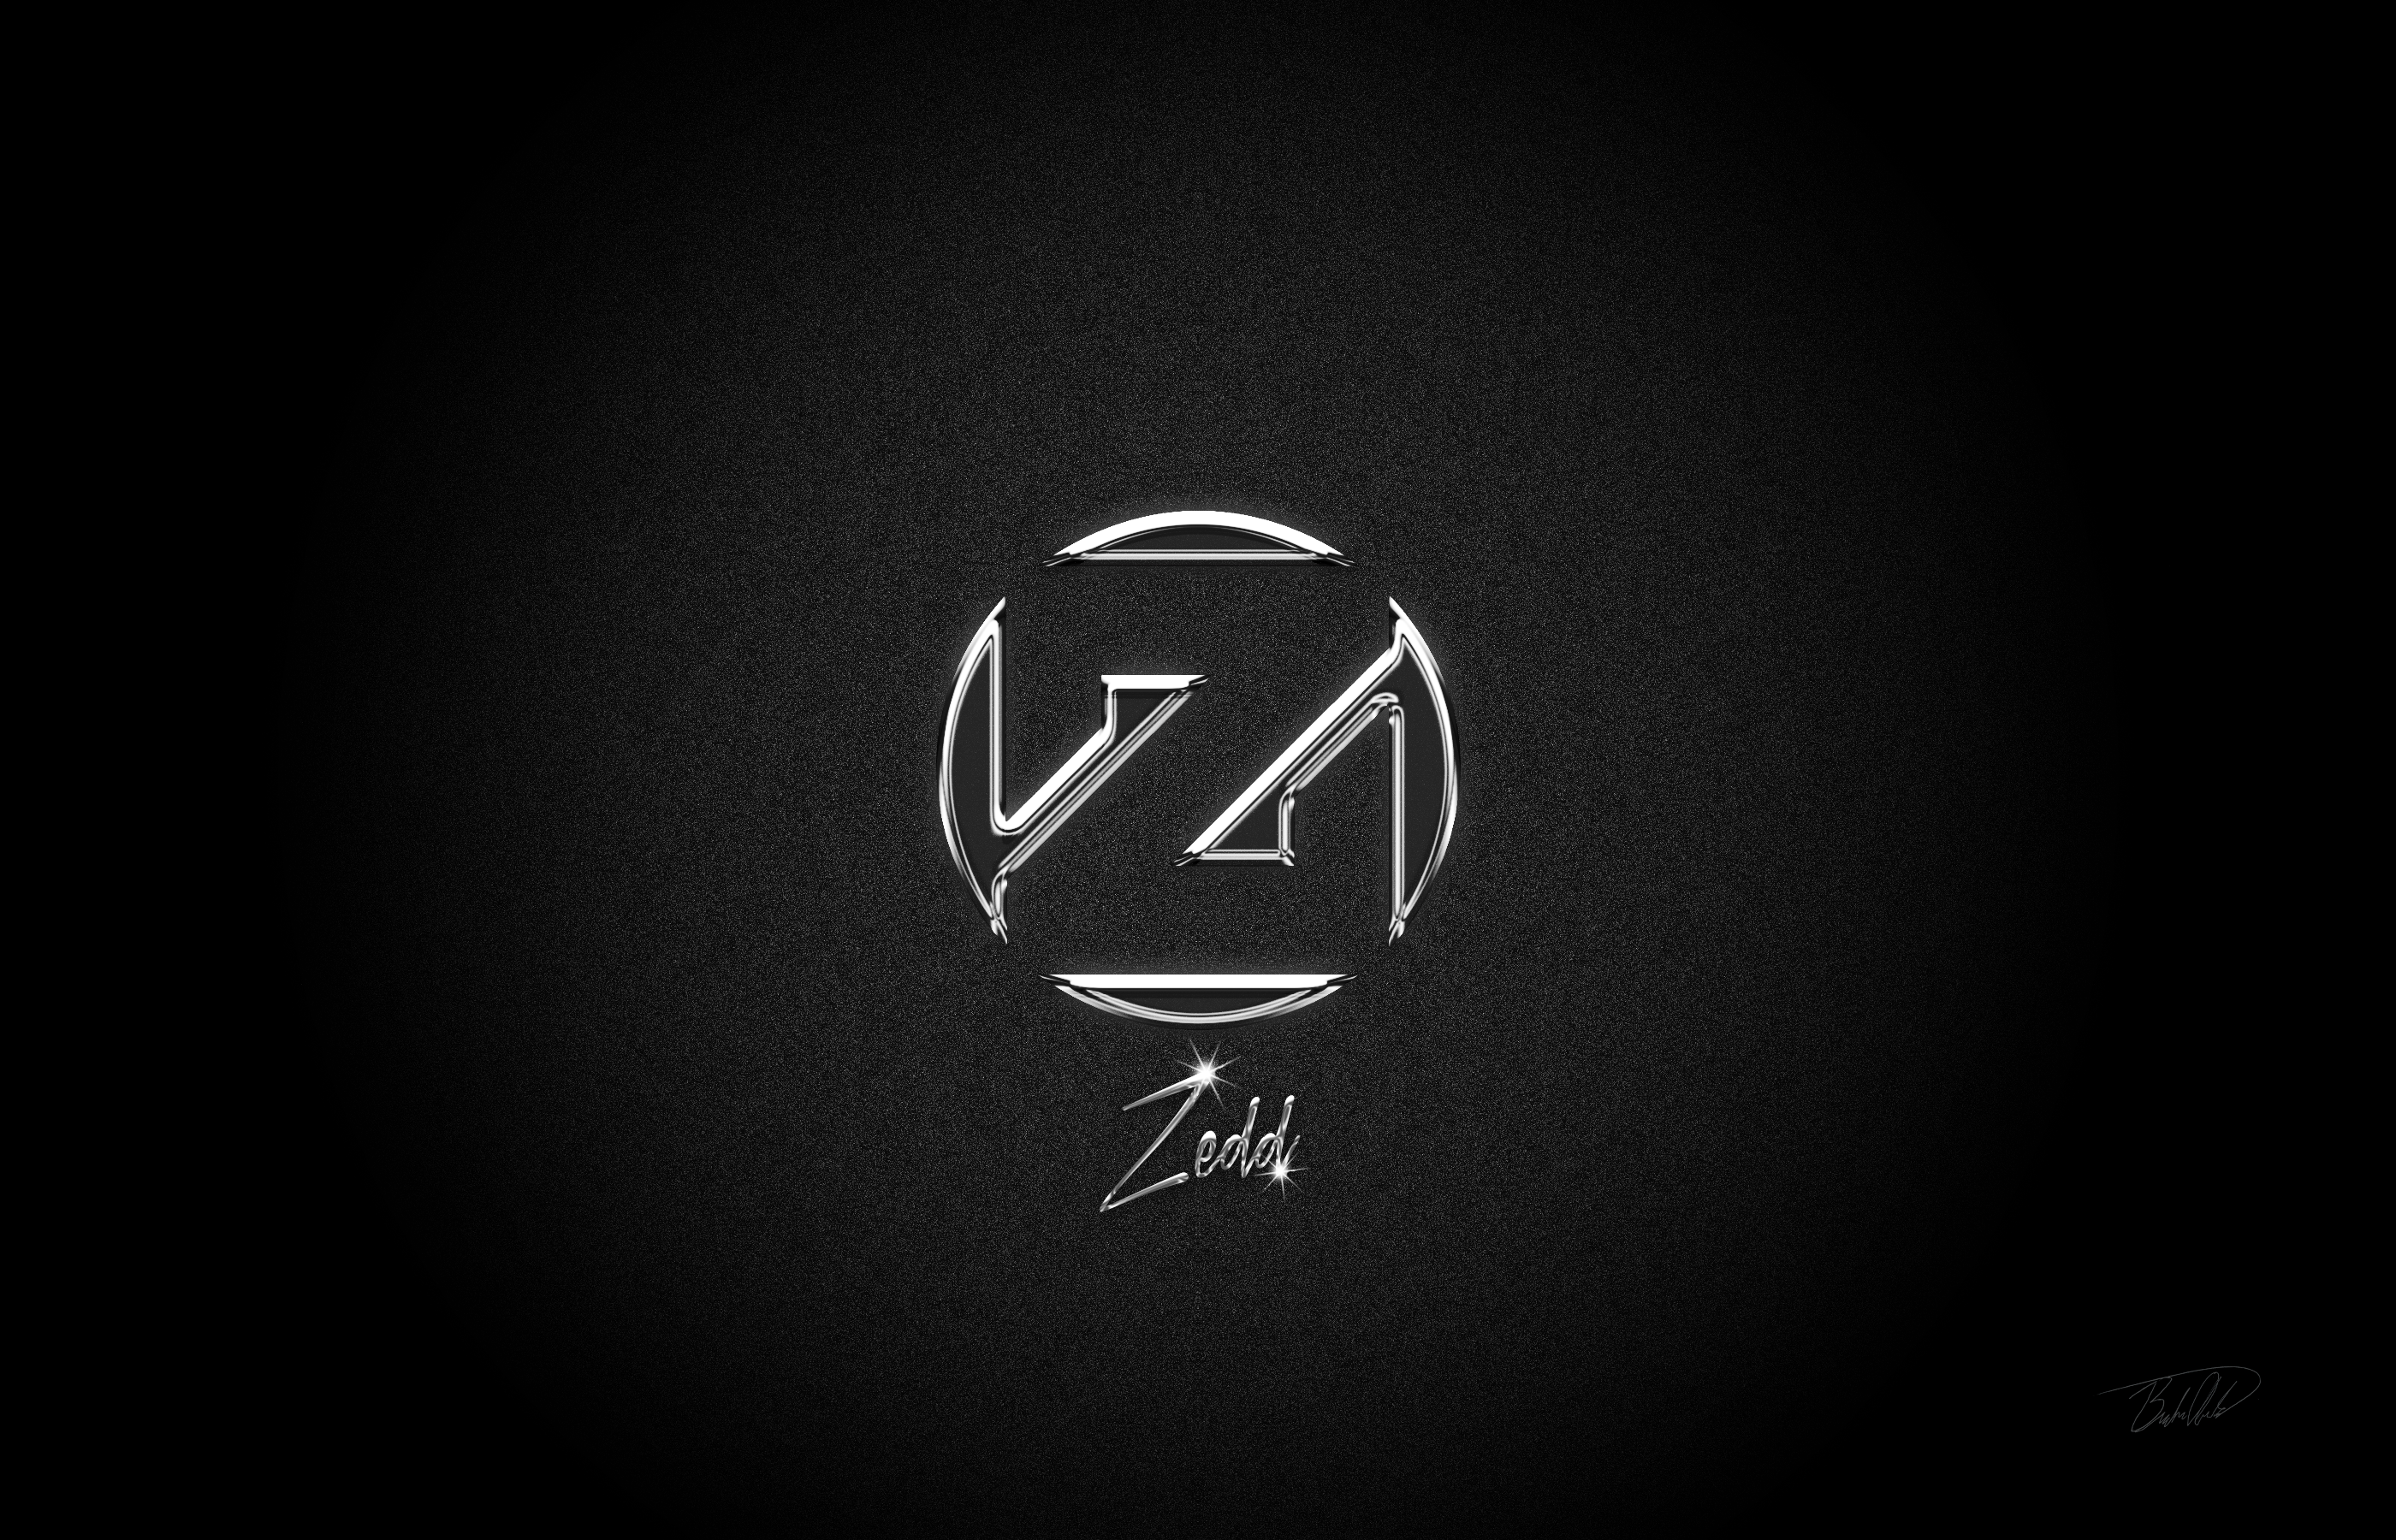 Zedd Chrome Background/Edit by brandonarboleda on DeviantArt